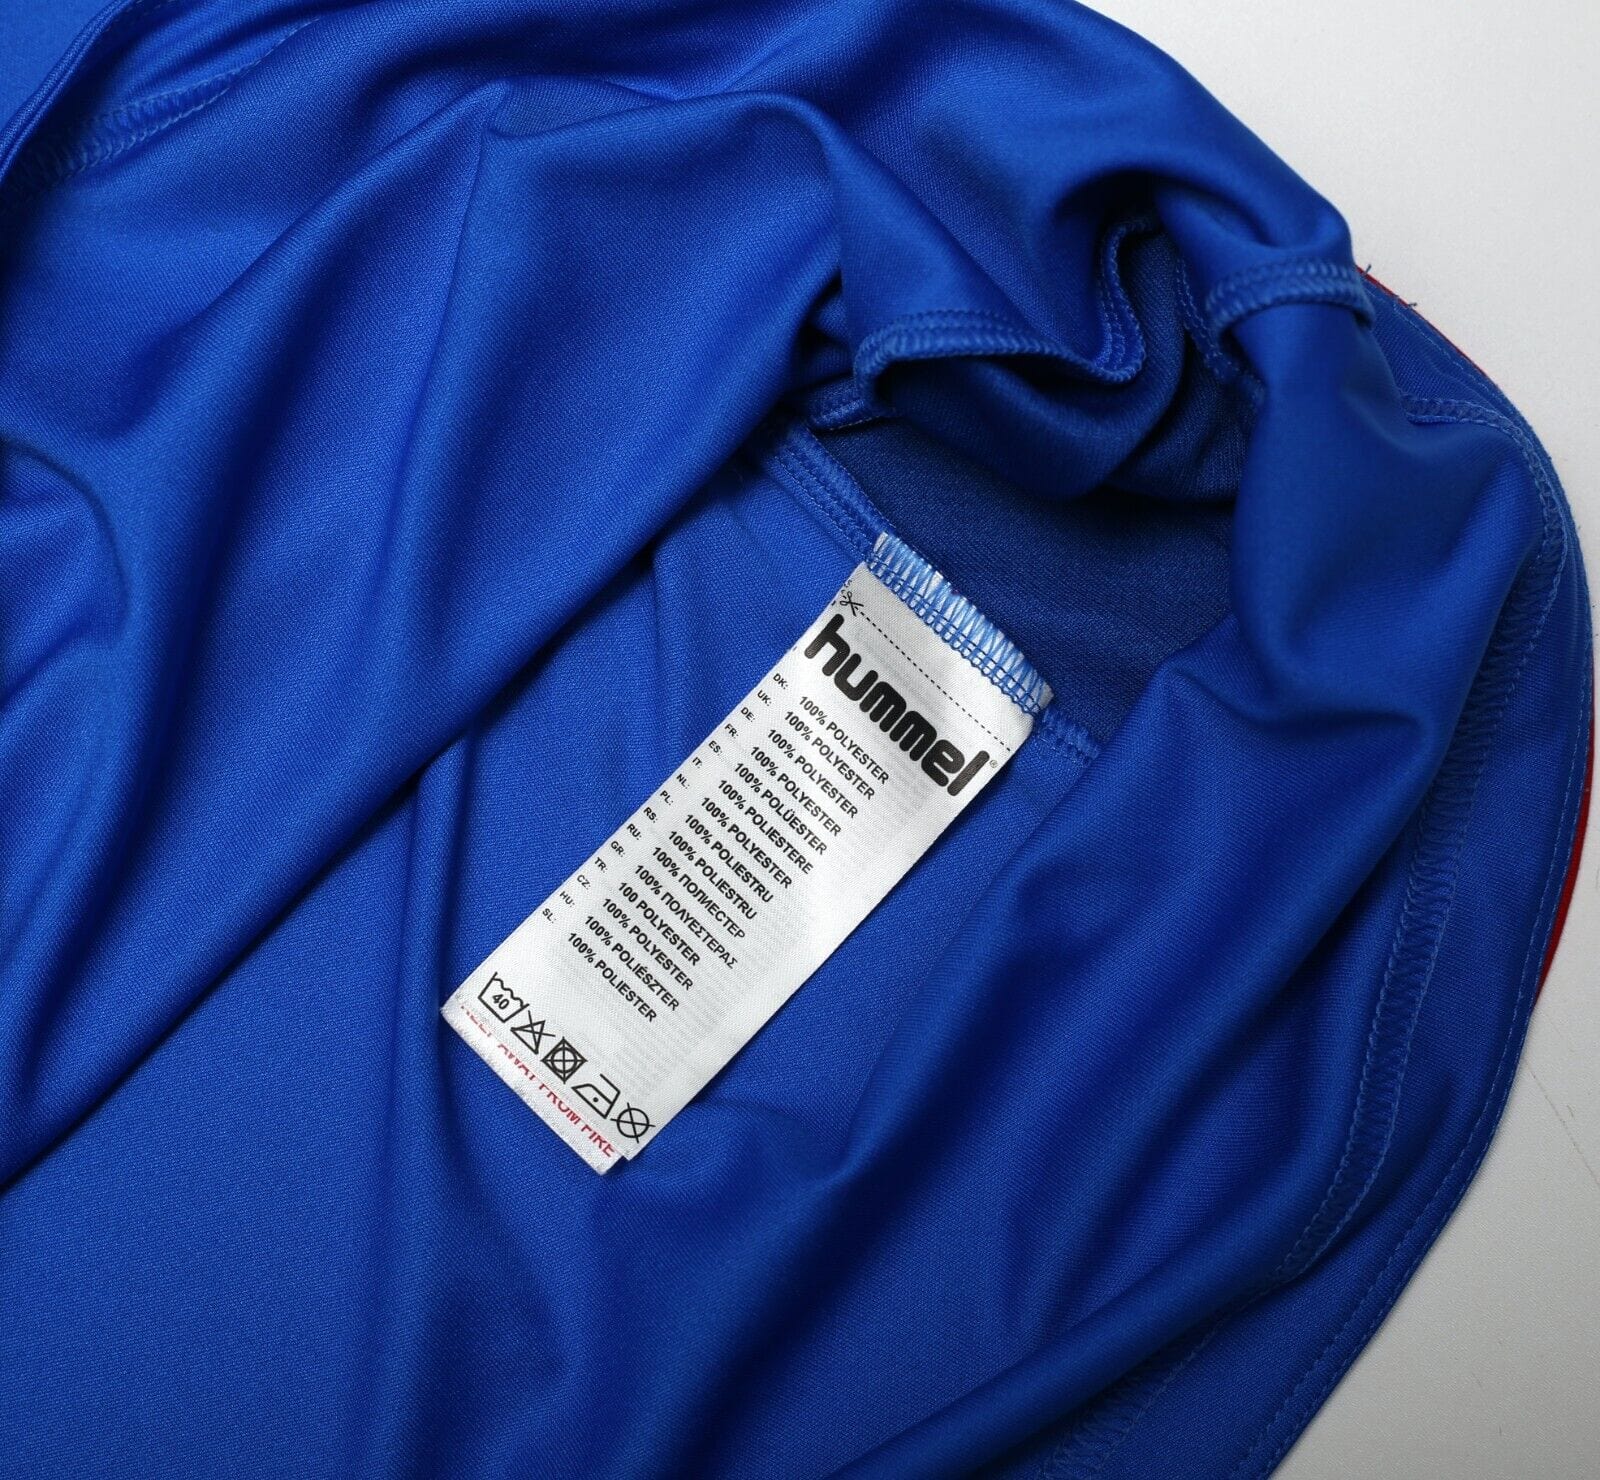 2018/19 RANGERS Hummel Long Sleeve Home Football Shirt Jersey (L/XL)